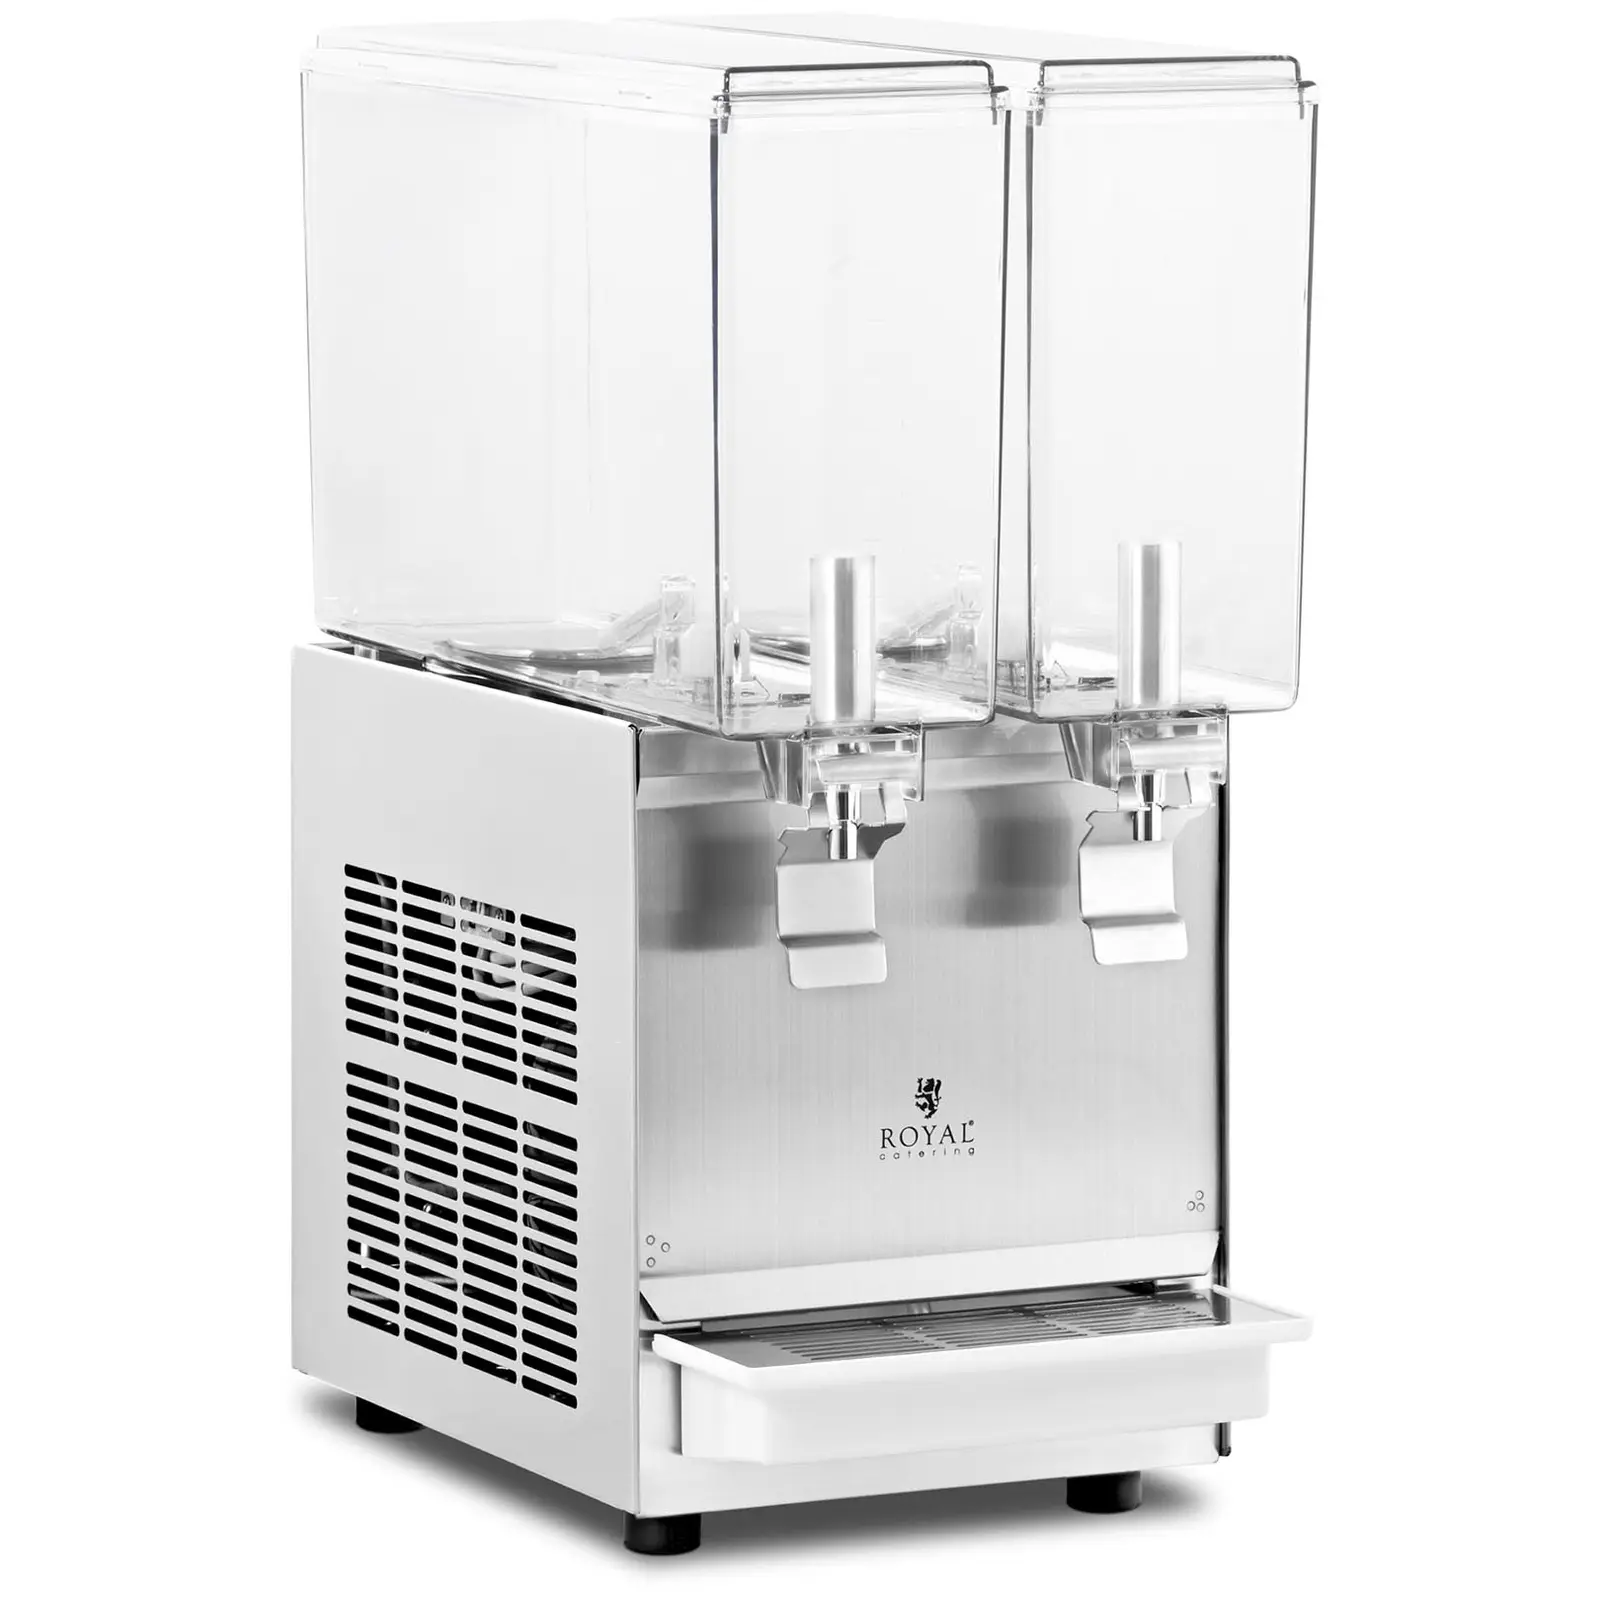 Dispensador de zumo - 2 x 10 L - Royal Catering - sistema de enfriamiento